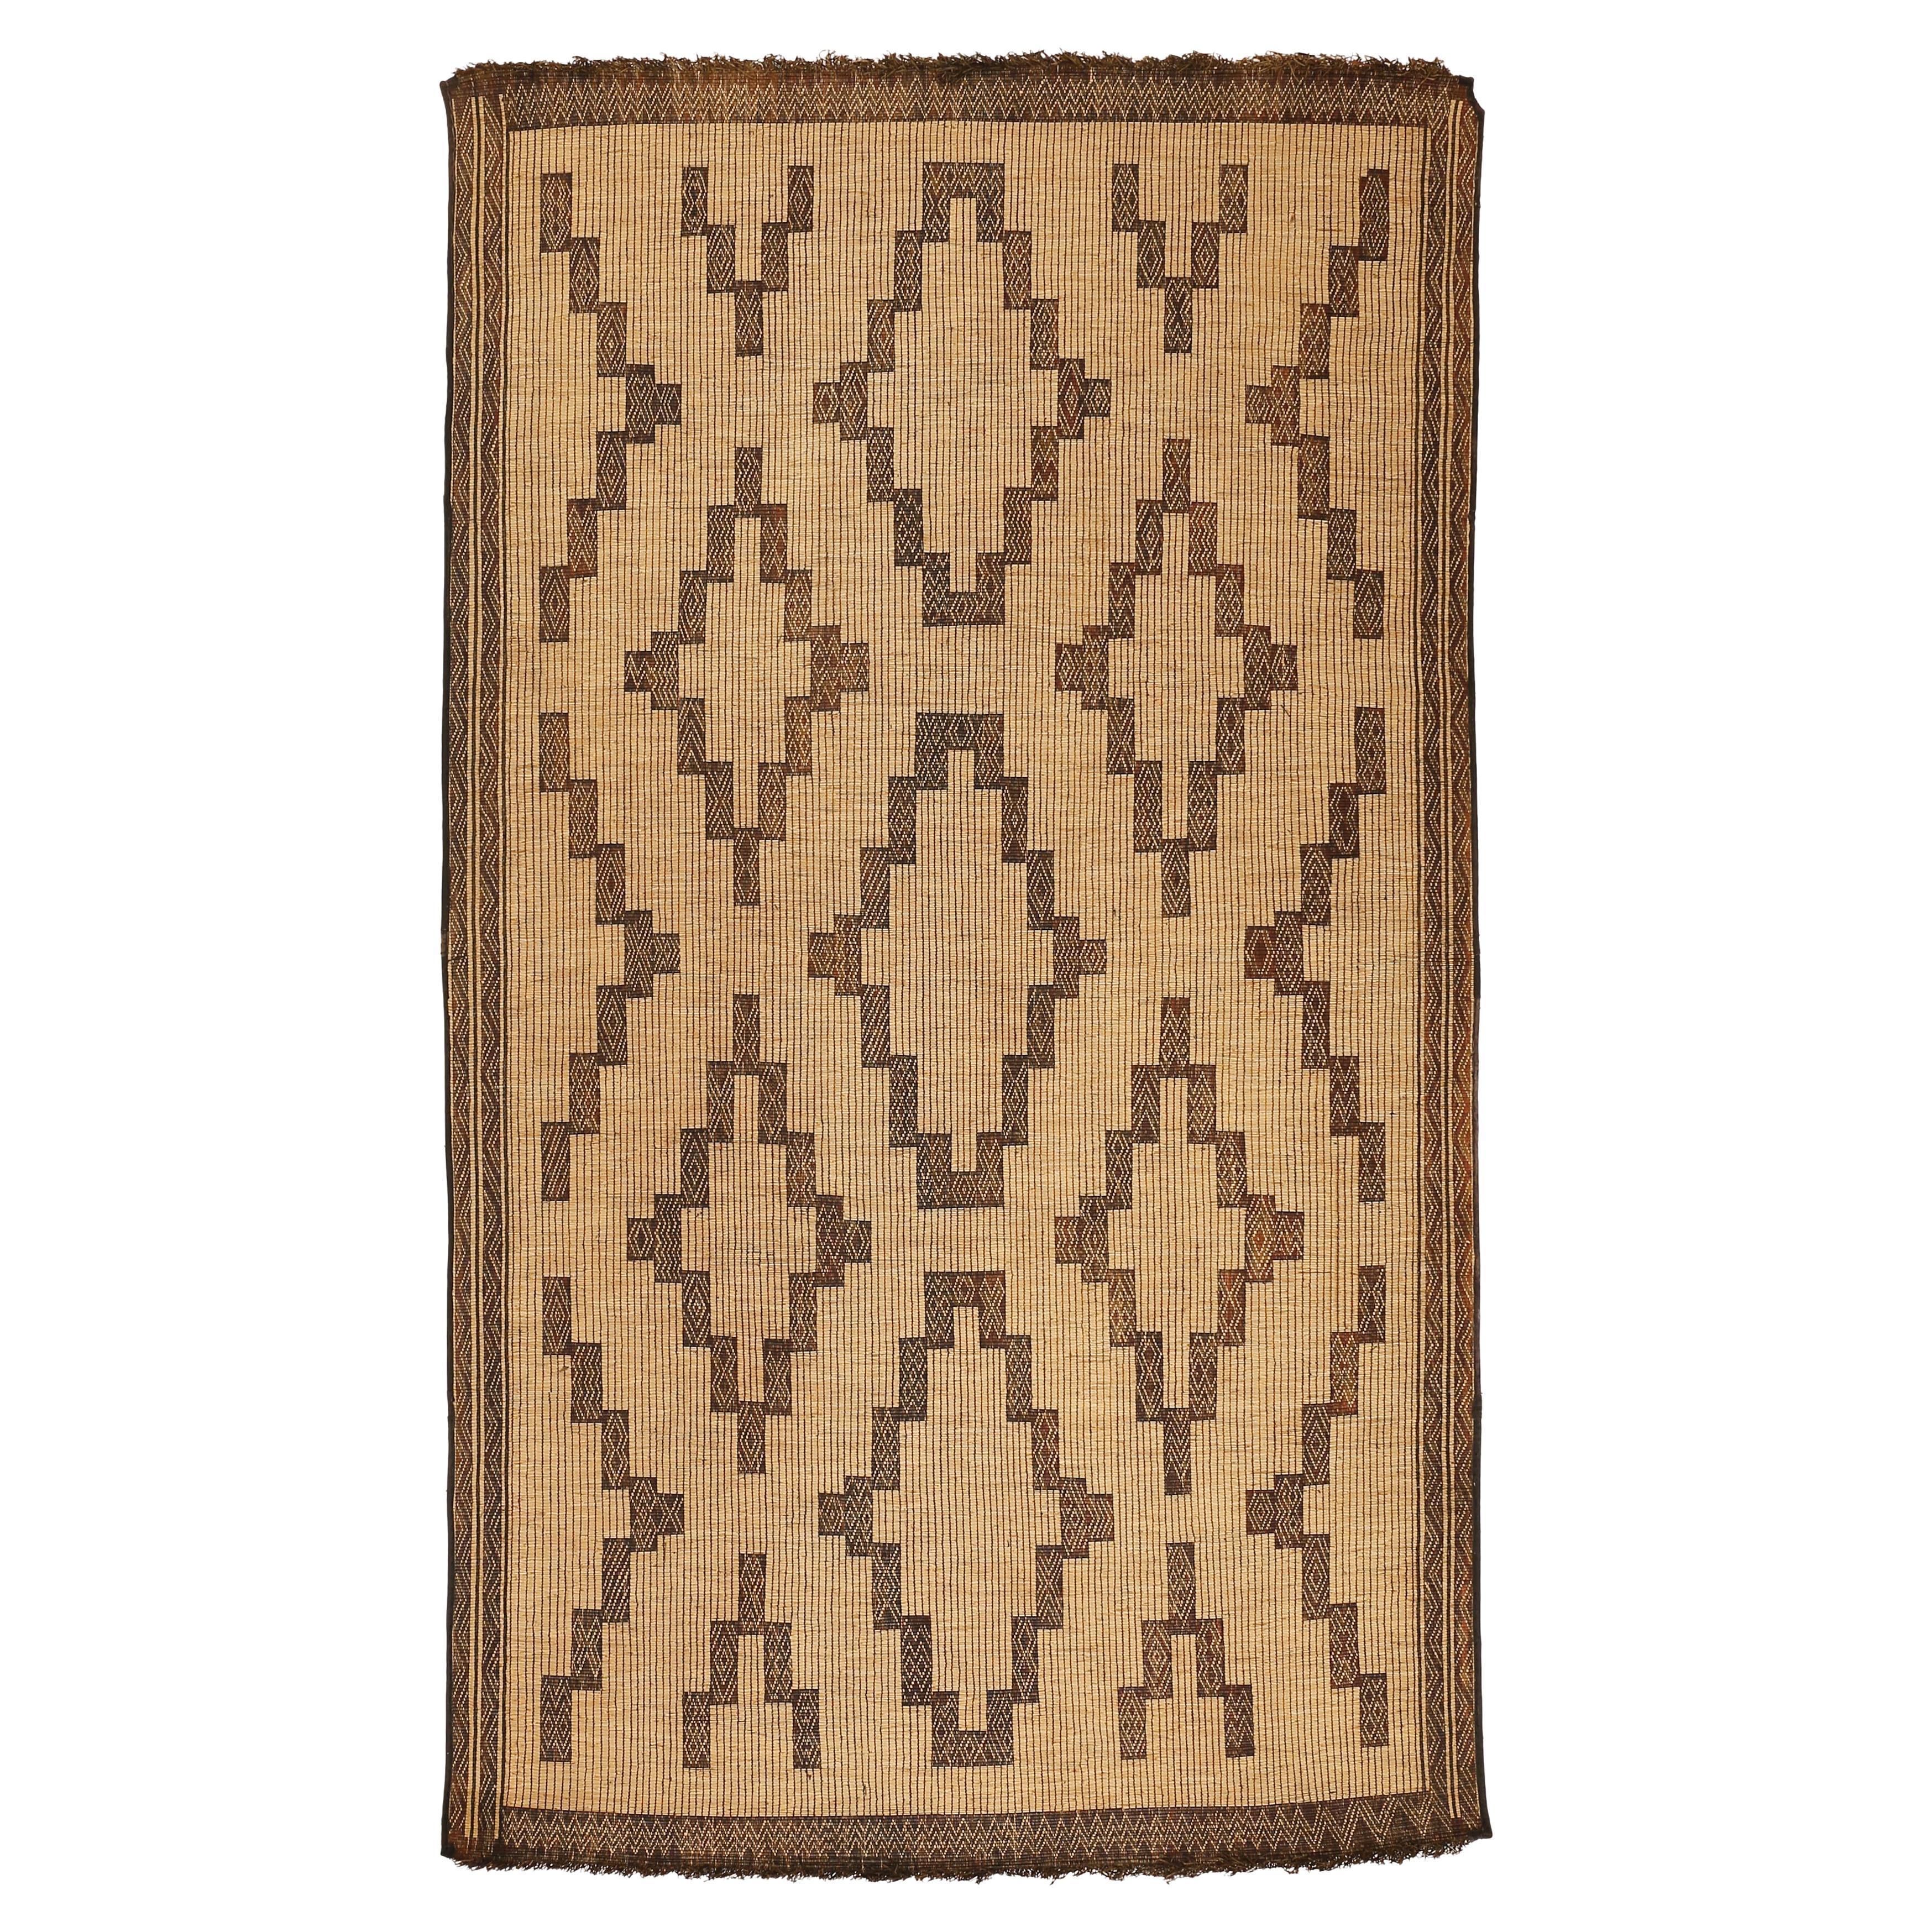 Saharanischer Tuareg-Teppich aus Leder und Schilf im Vintage-Stil mit geometrischem Muster